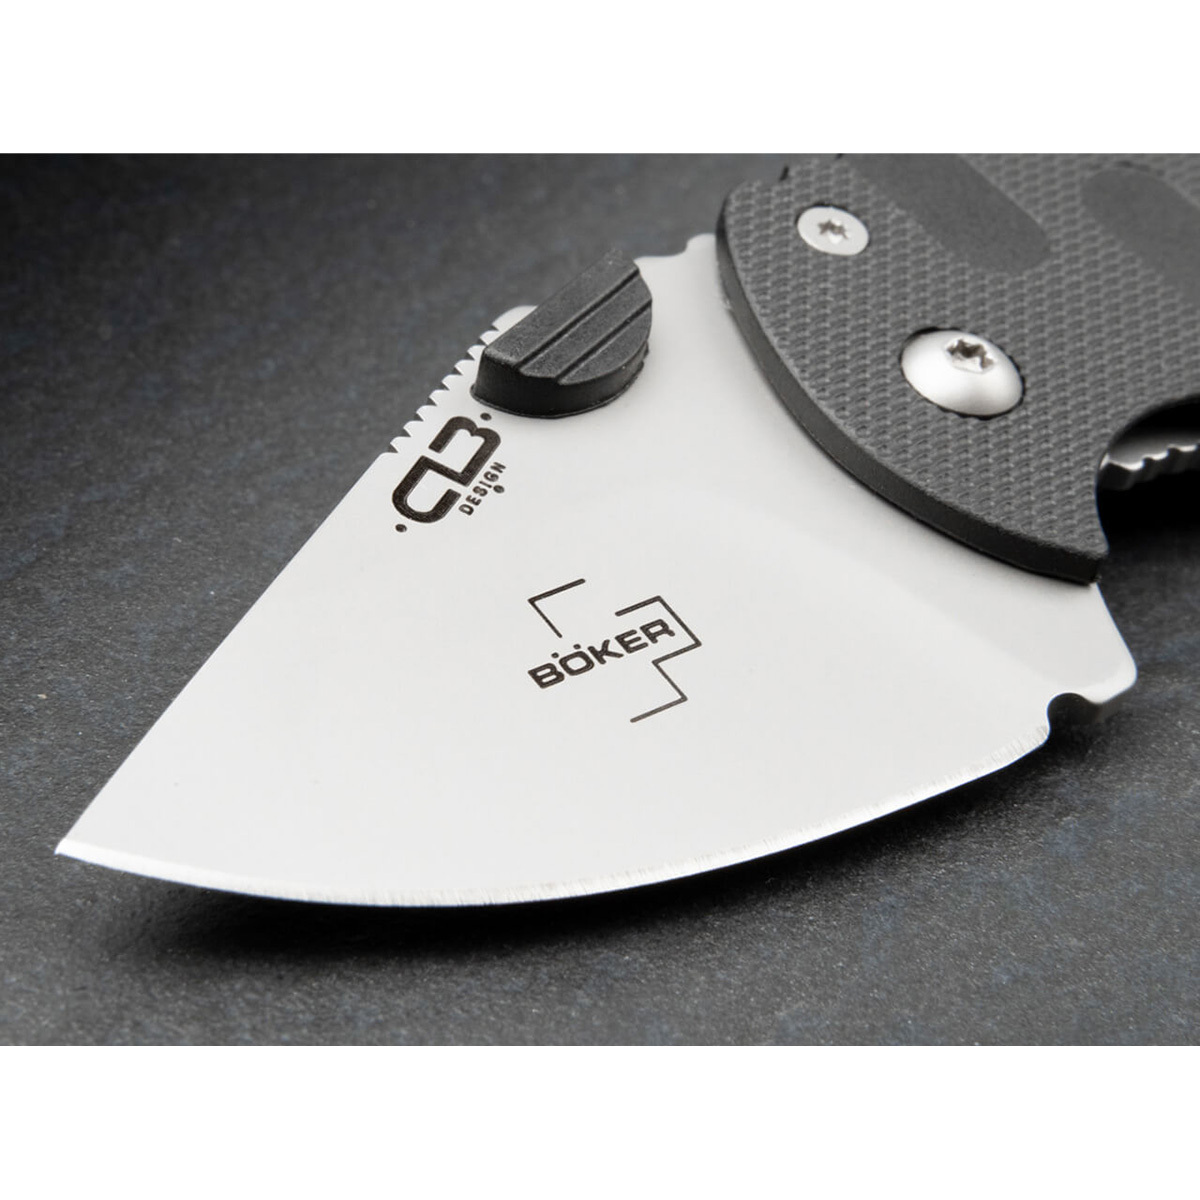 Складной нож Boker Subcom 2.0 Black, сталь D2, рукоять zytel/сталь - фото 2